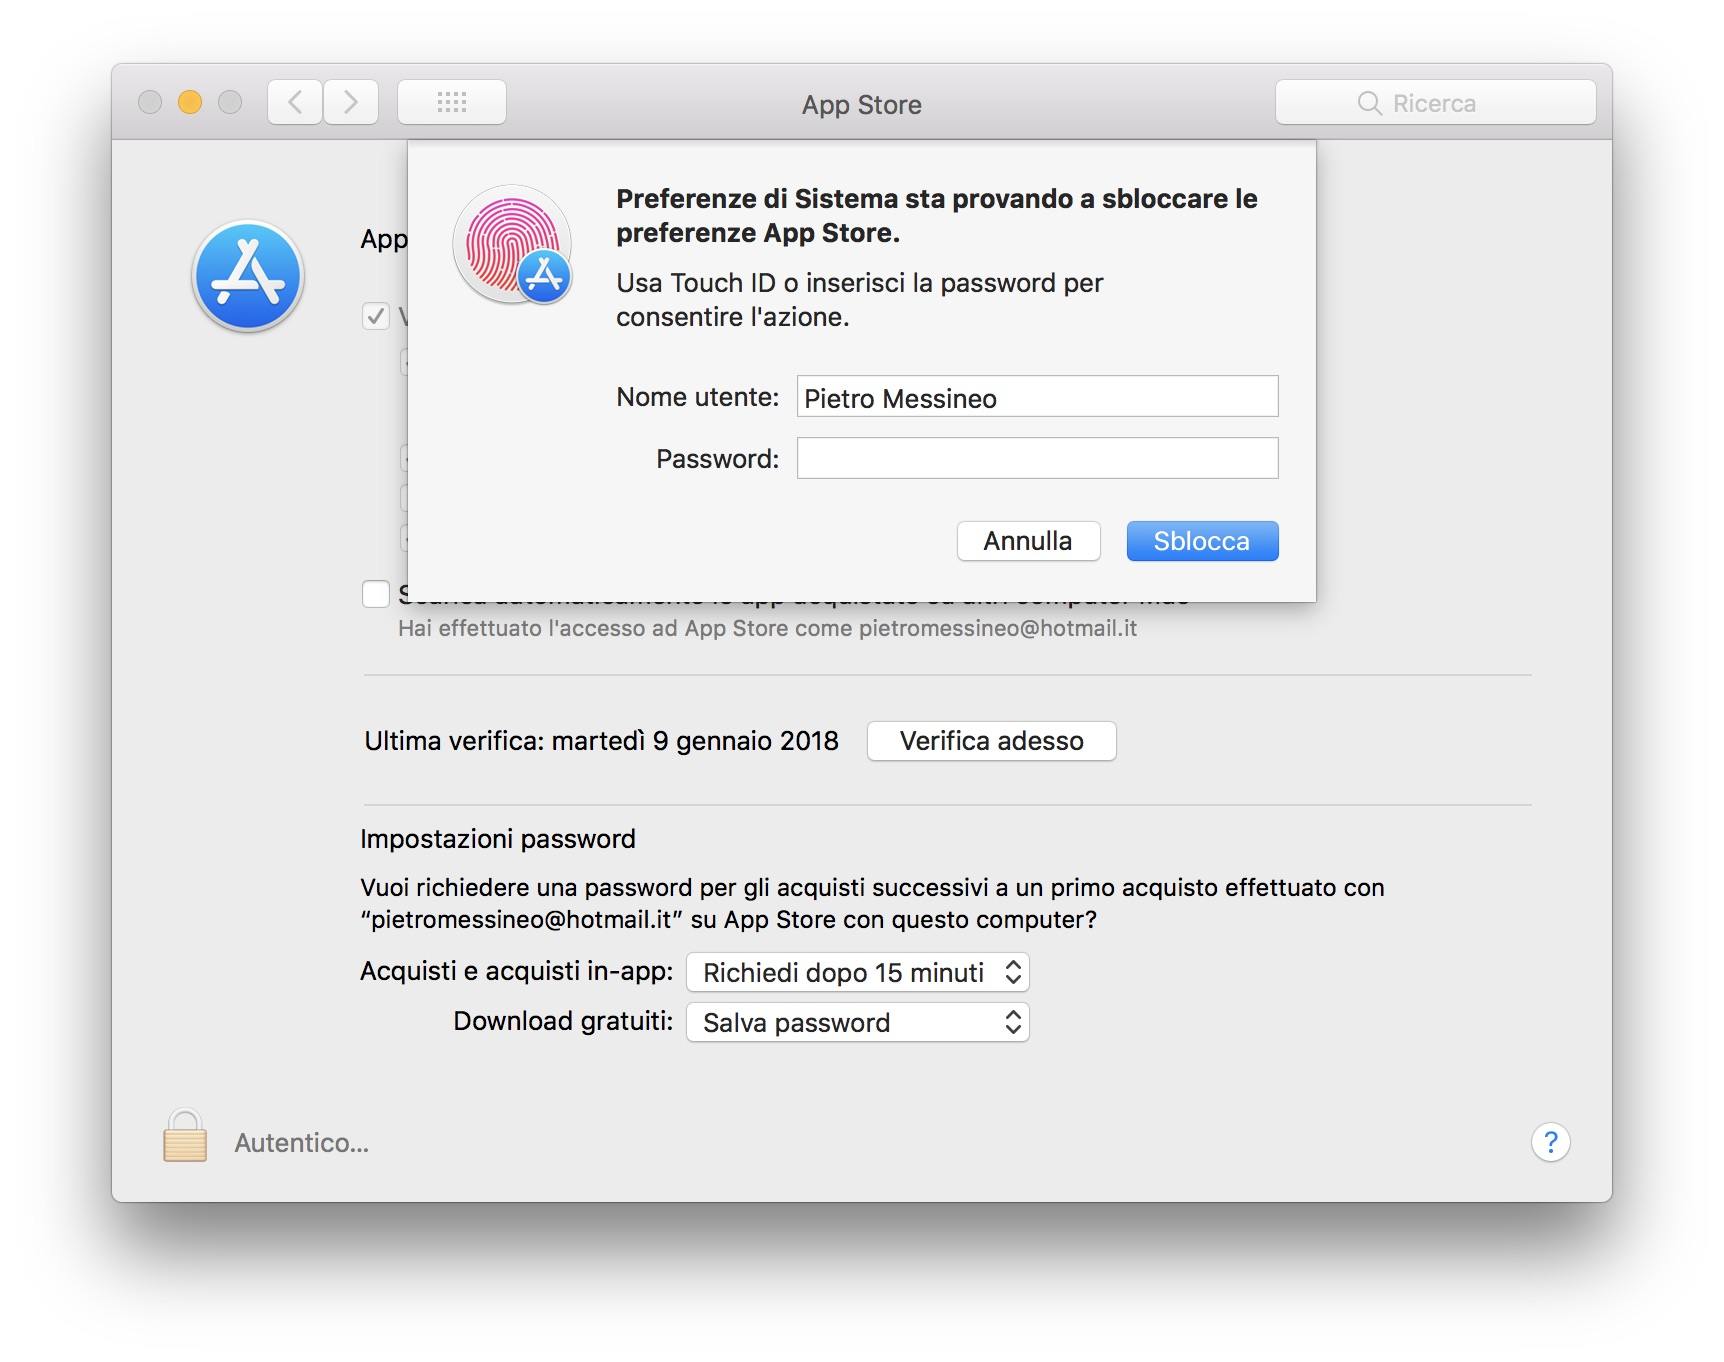 App Store in Preferenze di Sistema può essere sbloccato con qualsiasi password 1